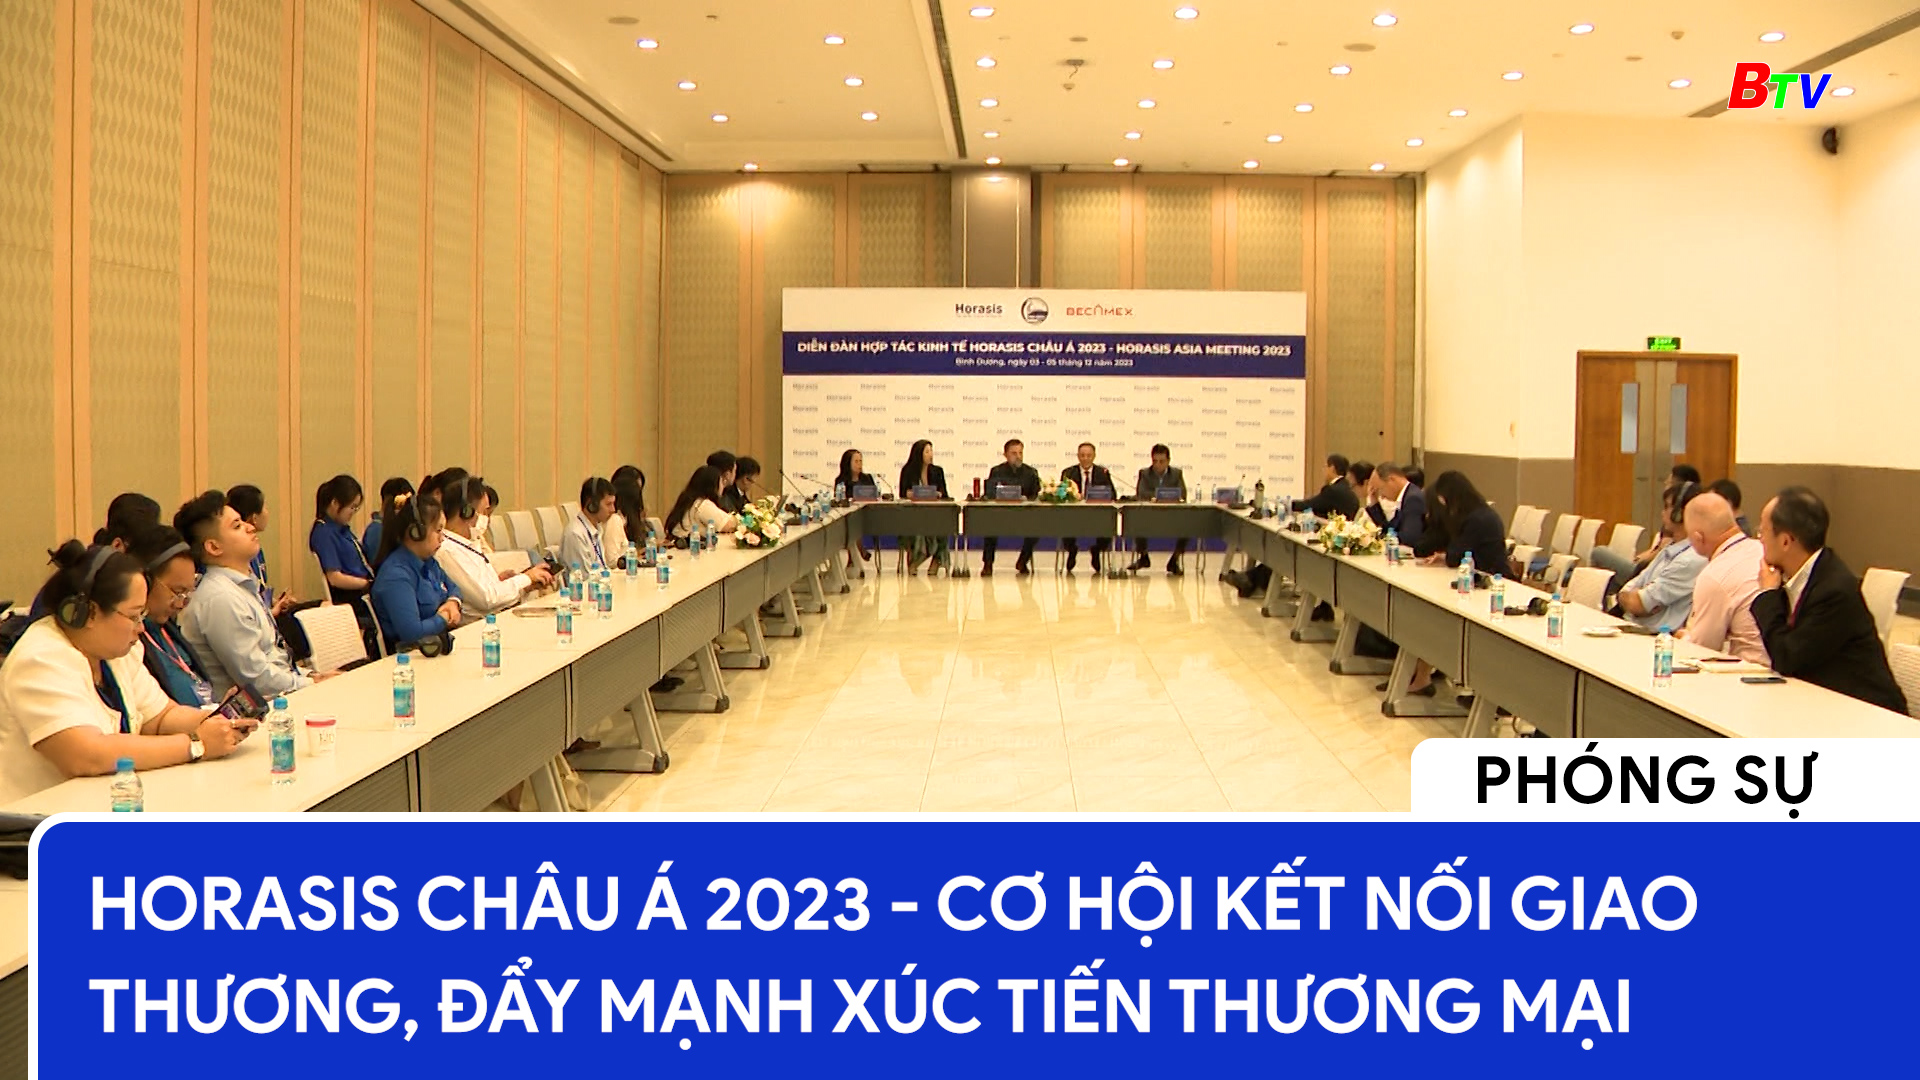 HORASIS Châu Á 2023 - Cơ hội kết nối giao thương, đẩy mạnh xúc tiến thương mại